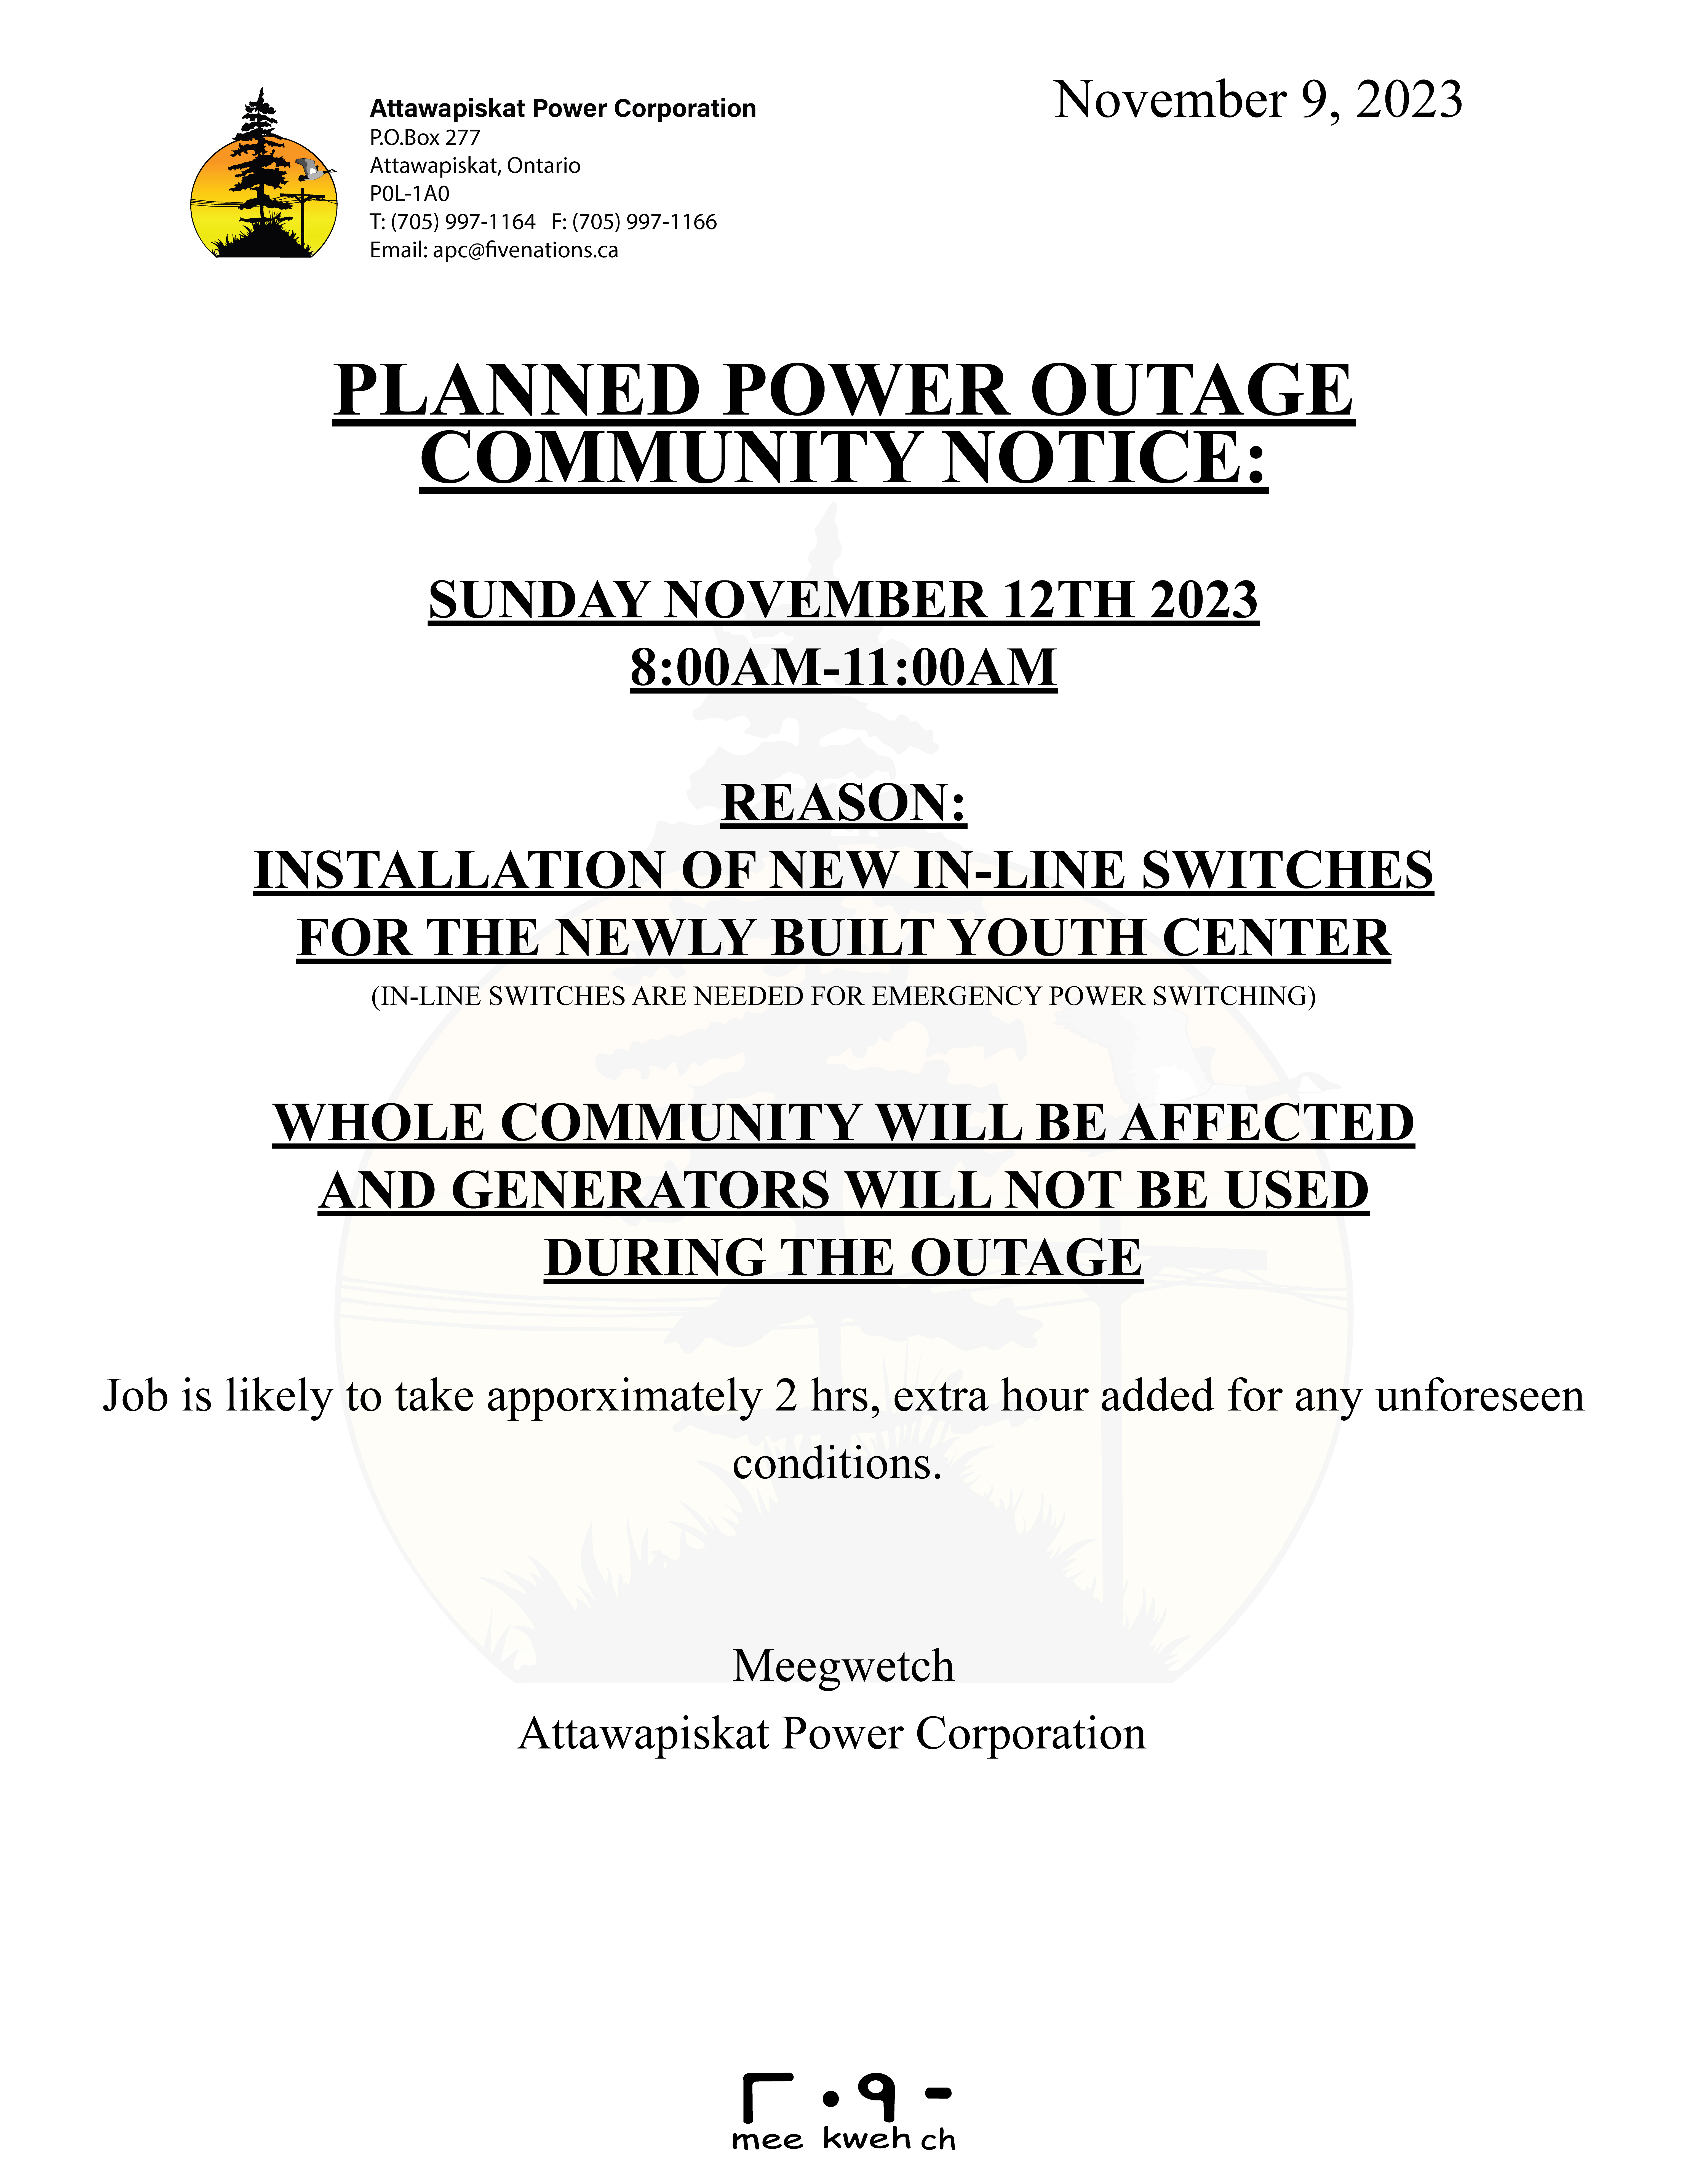 Outage Nov 12 2023 8-11am